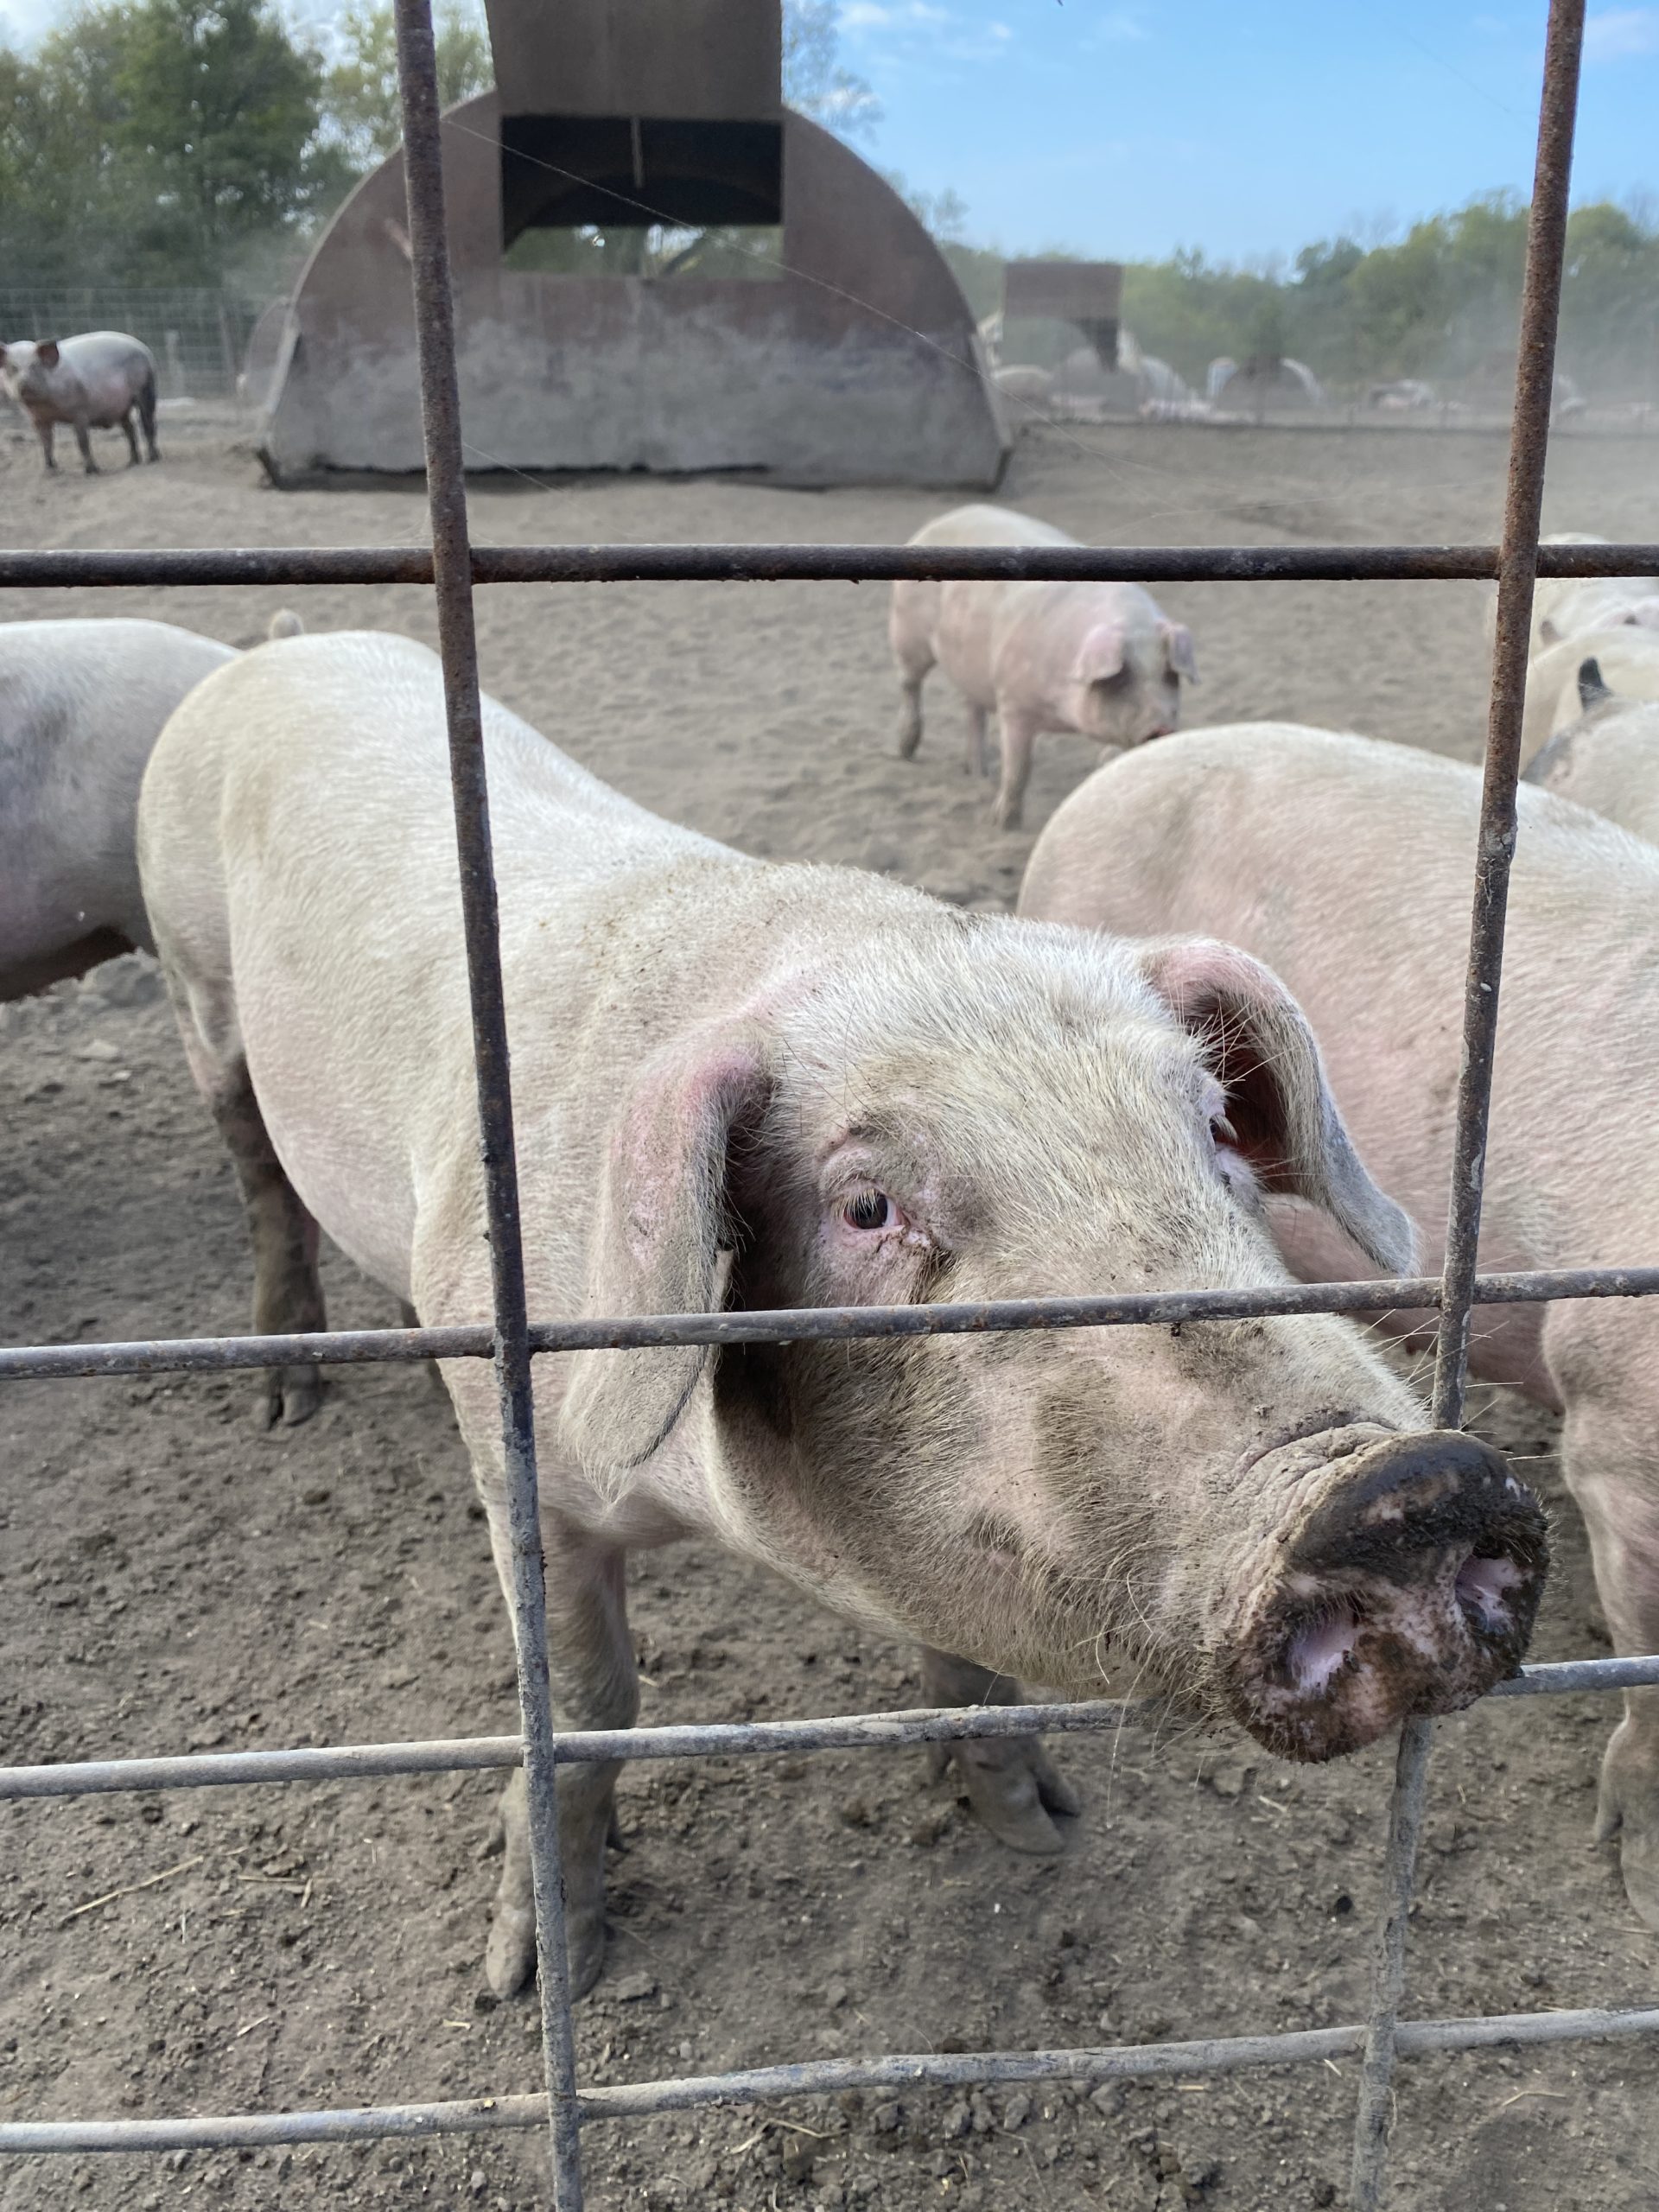 Pigs on a pig farm.